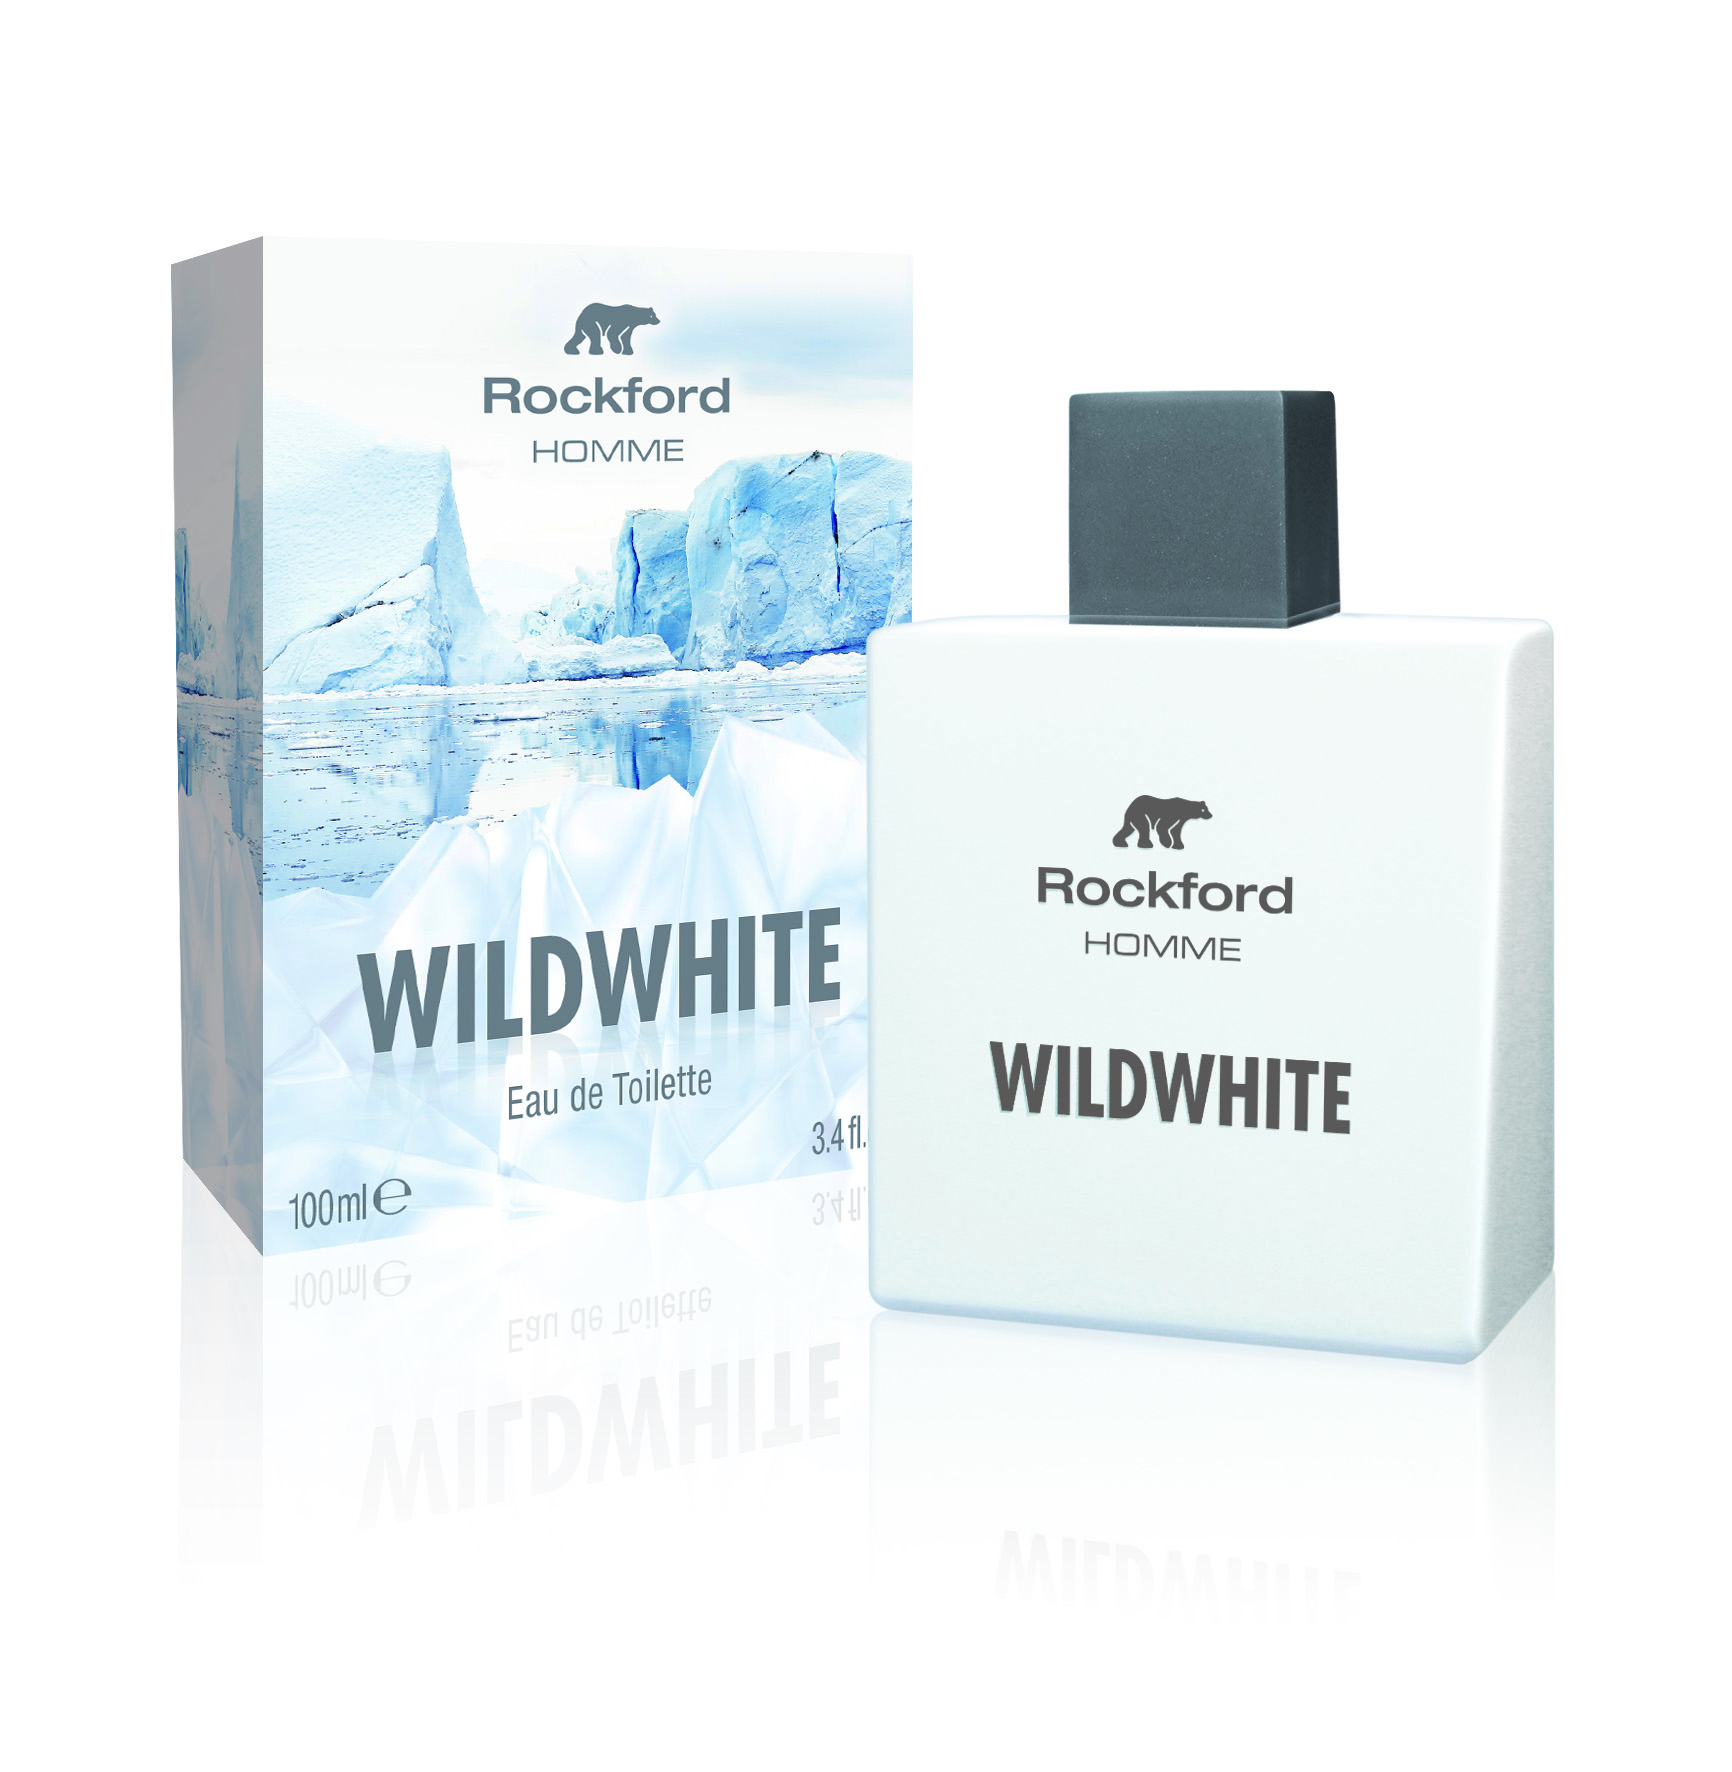 Rockford profumo: WildWhite, la nuova fragranza maschile